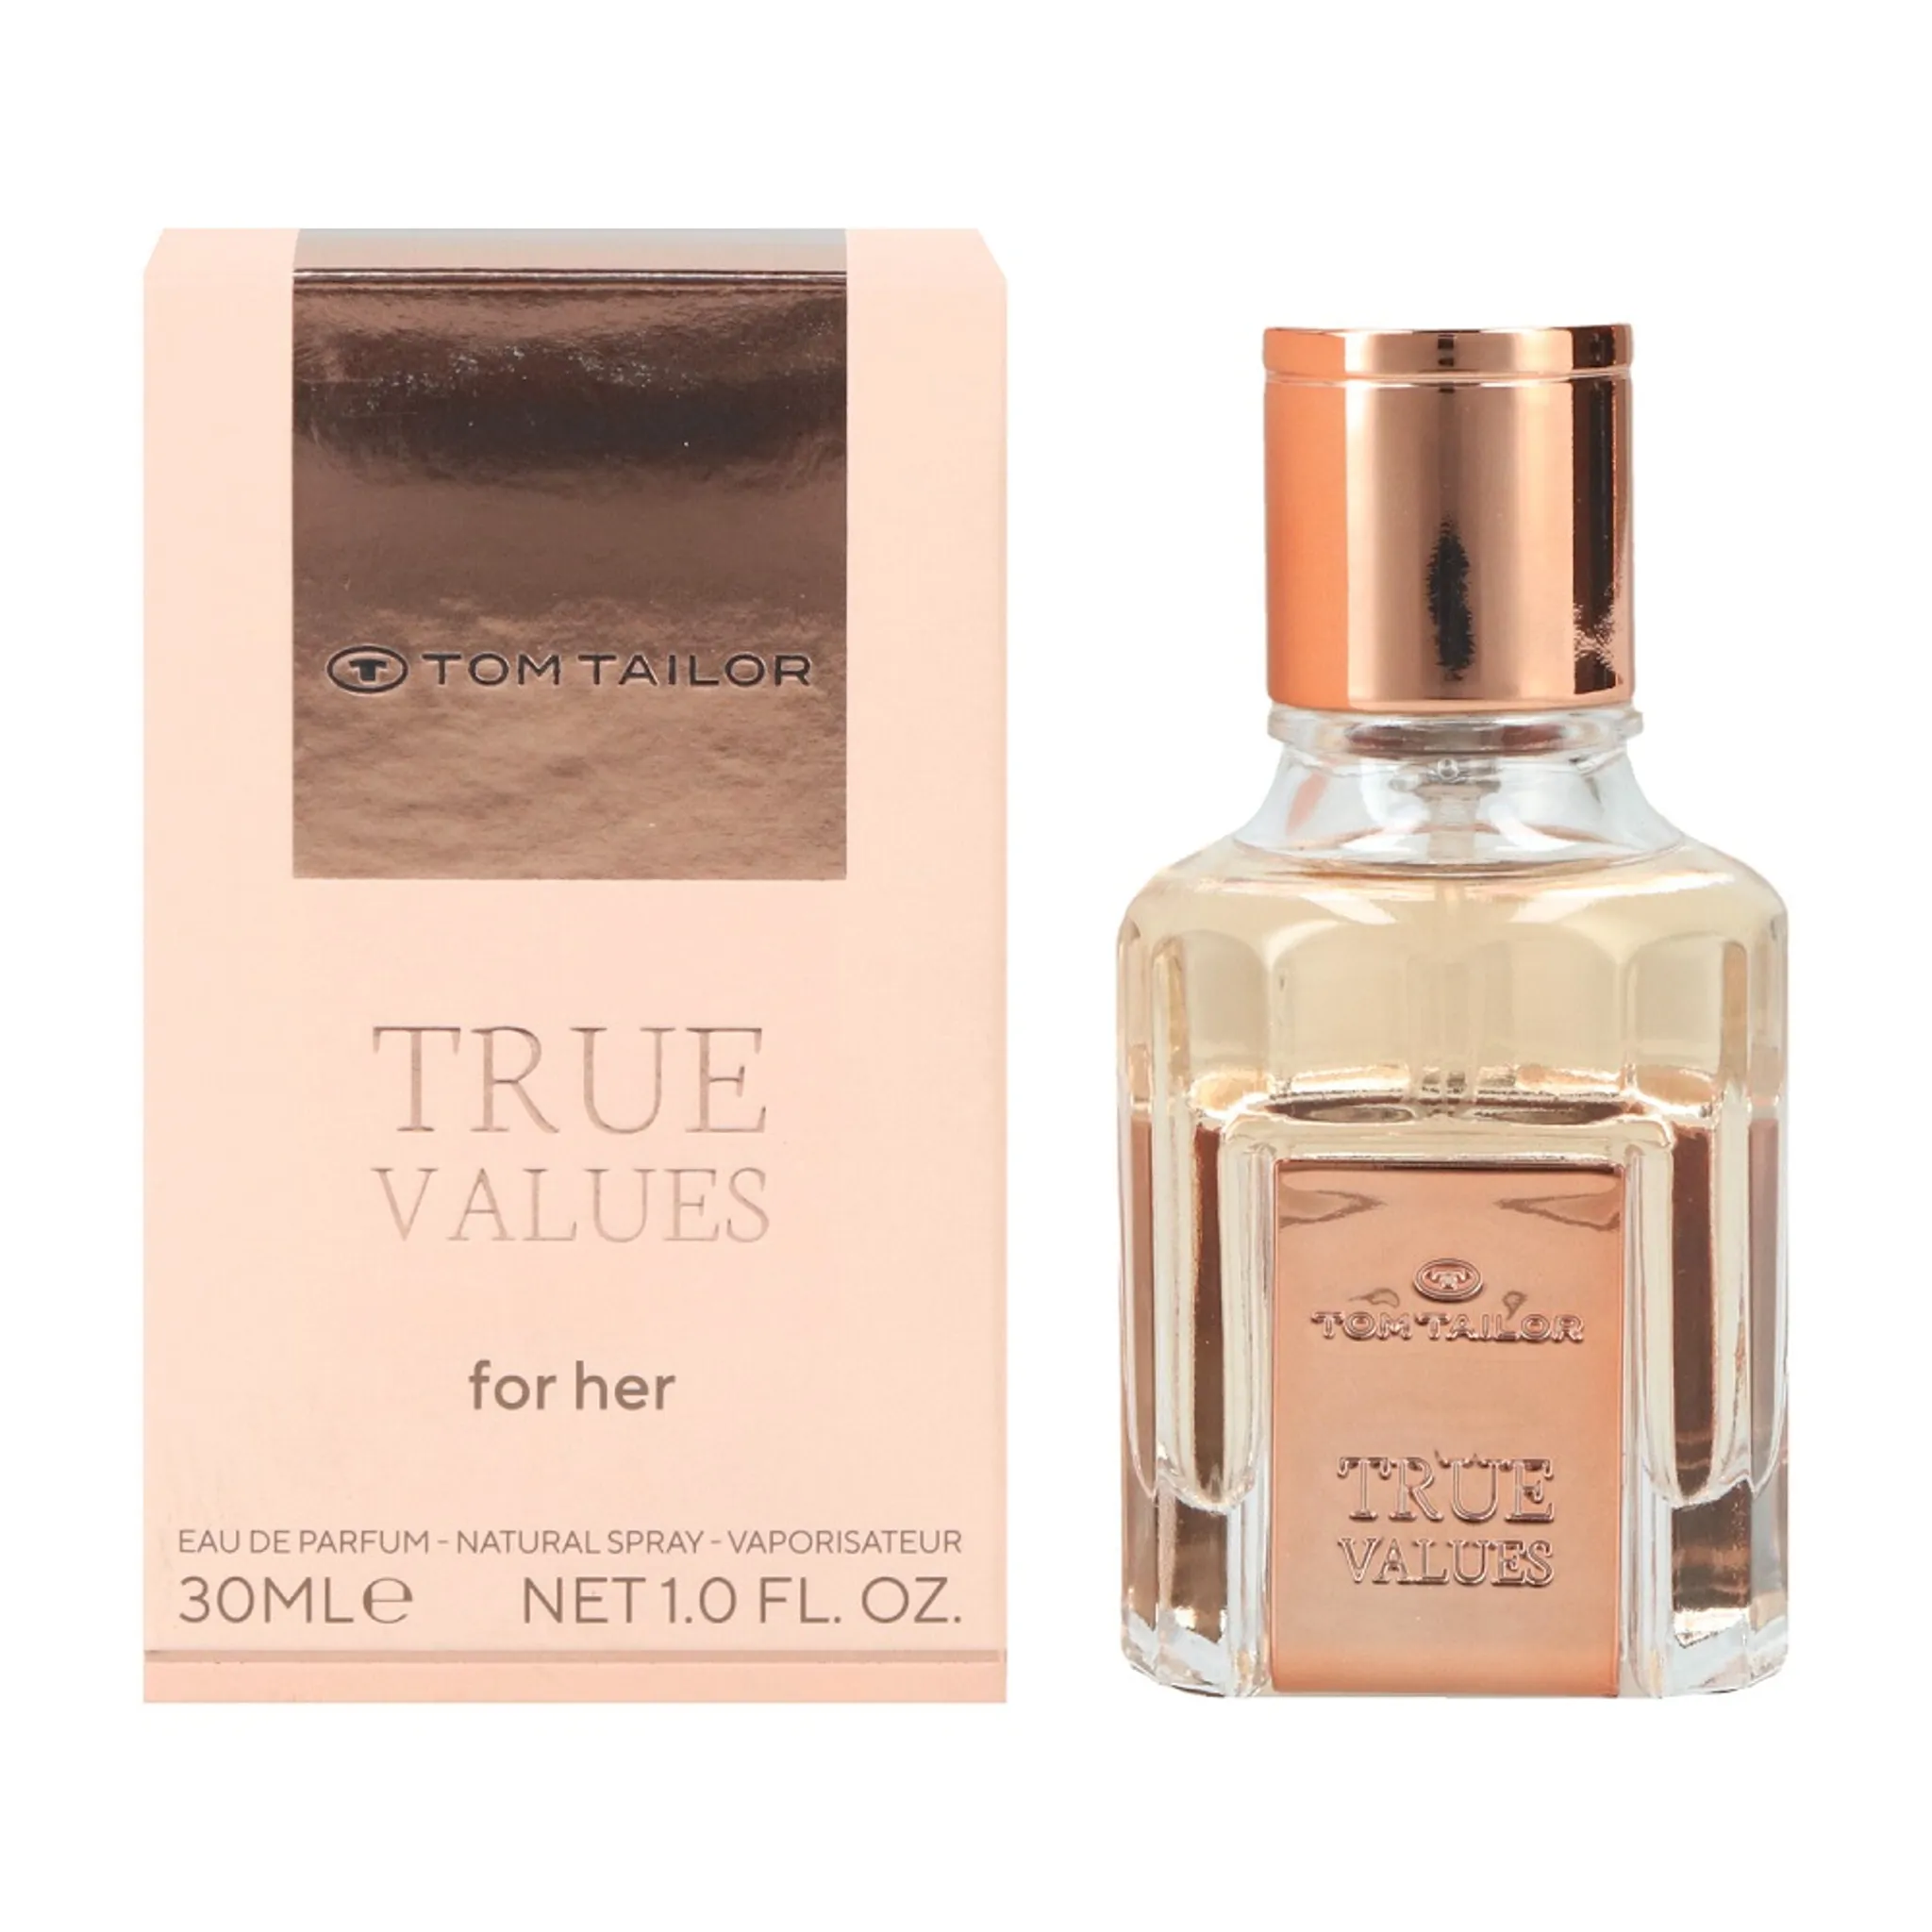 Parfum Tailor Values Her True de Eau Tom for